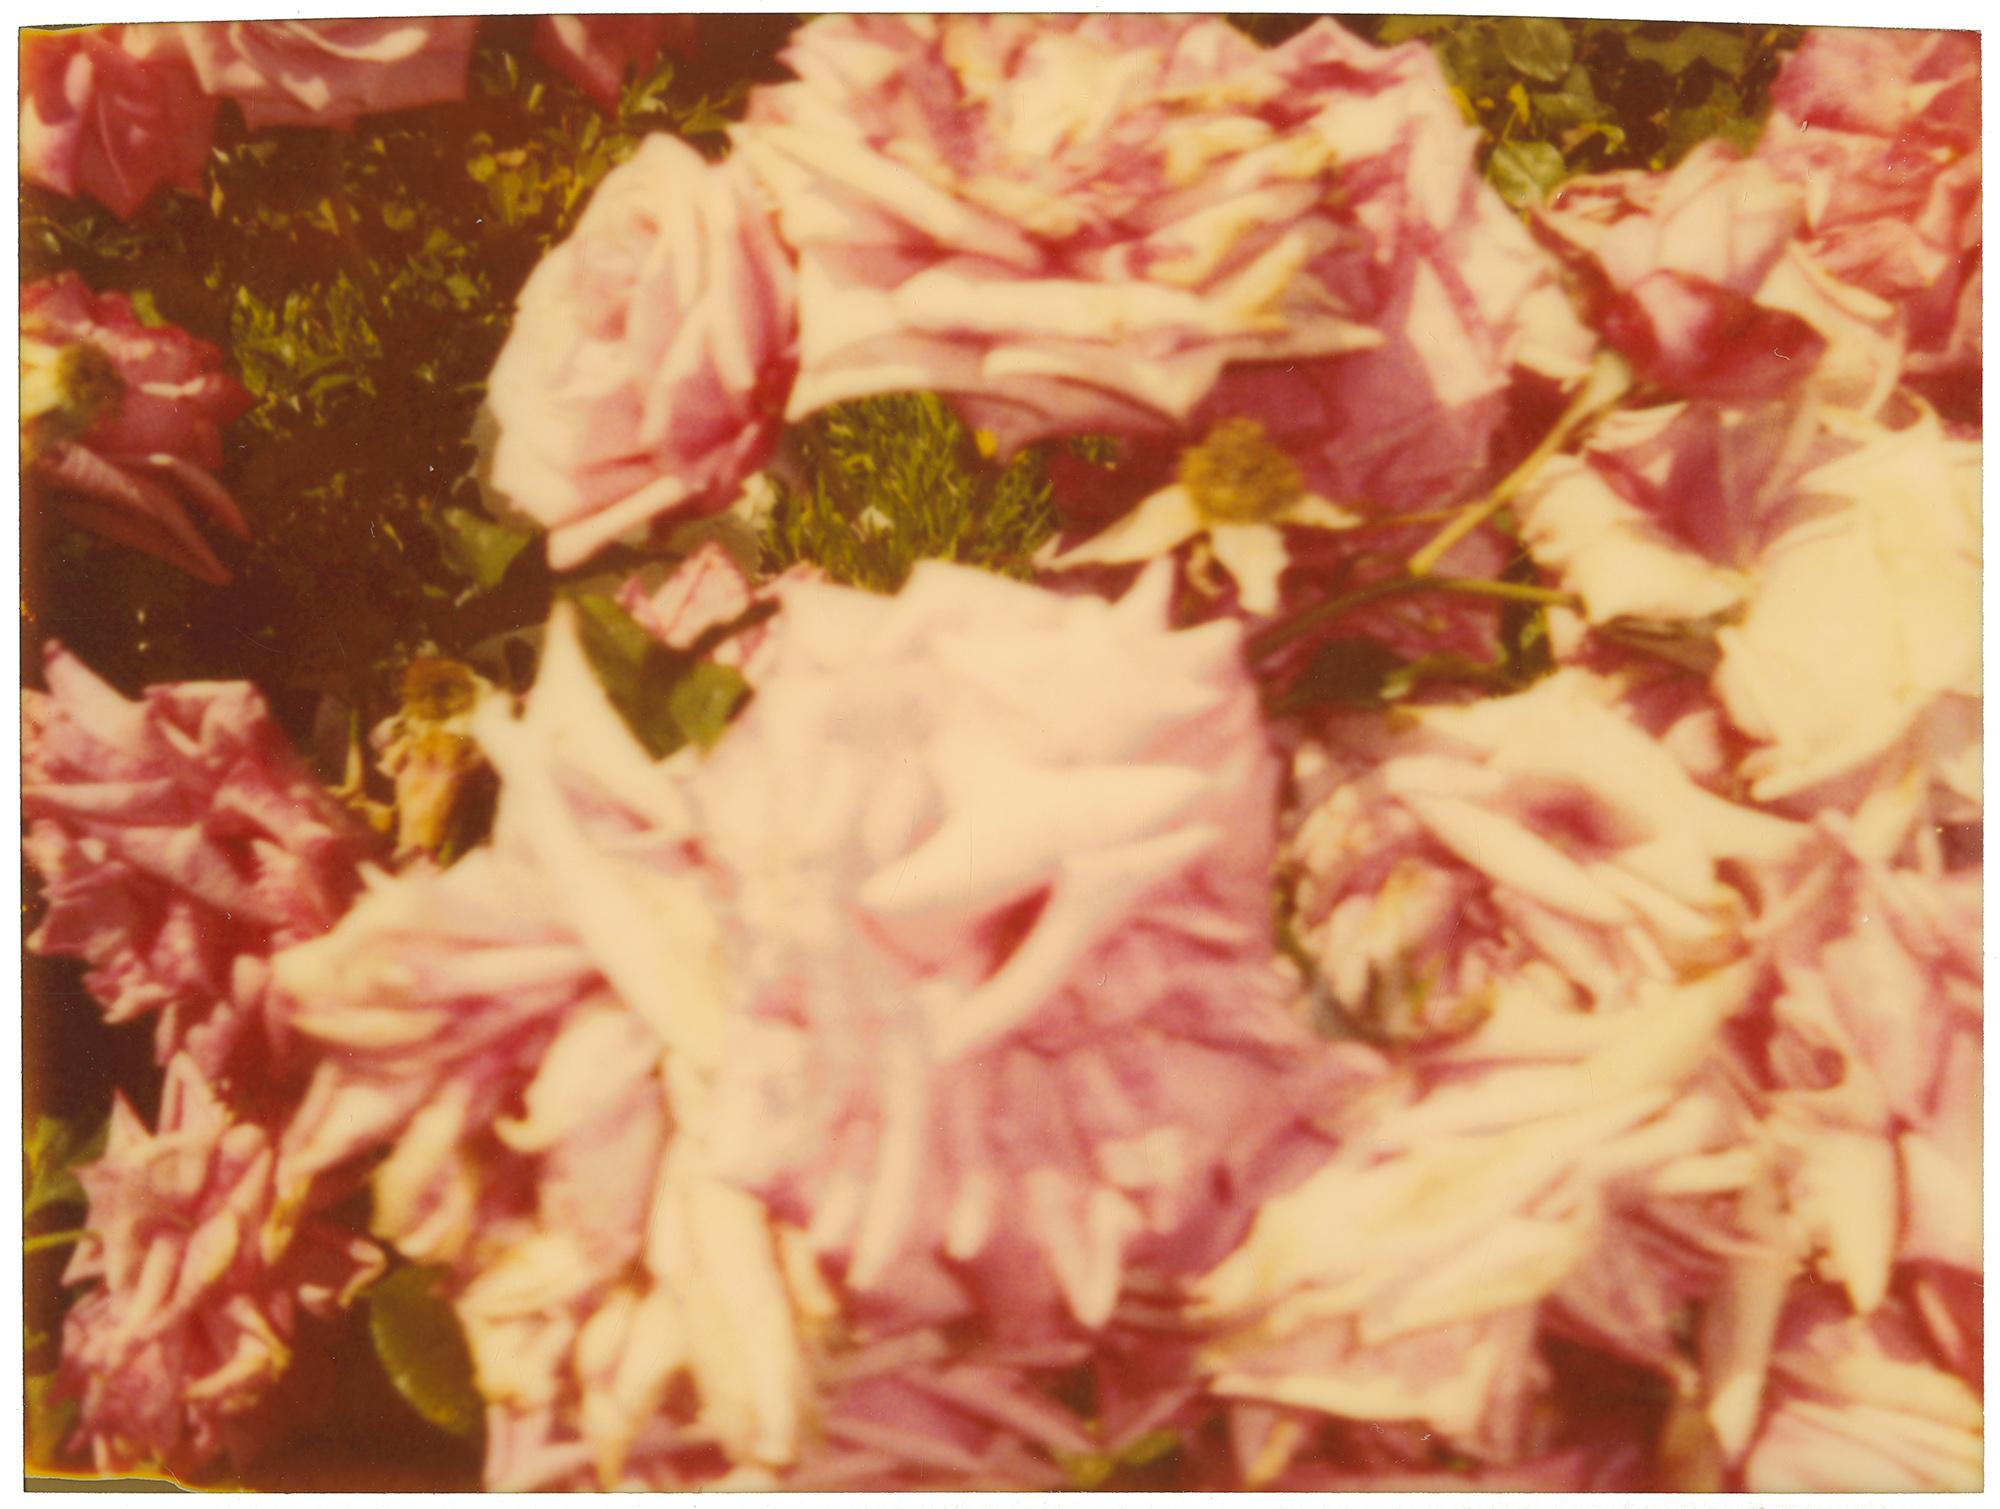 Rosegarden #01 (Suburbia), analog, diptych - Photograph by Stefanie Schneider